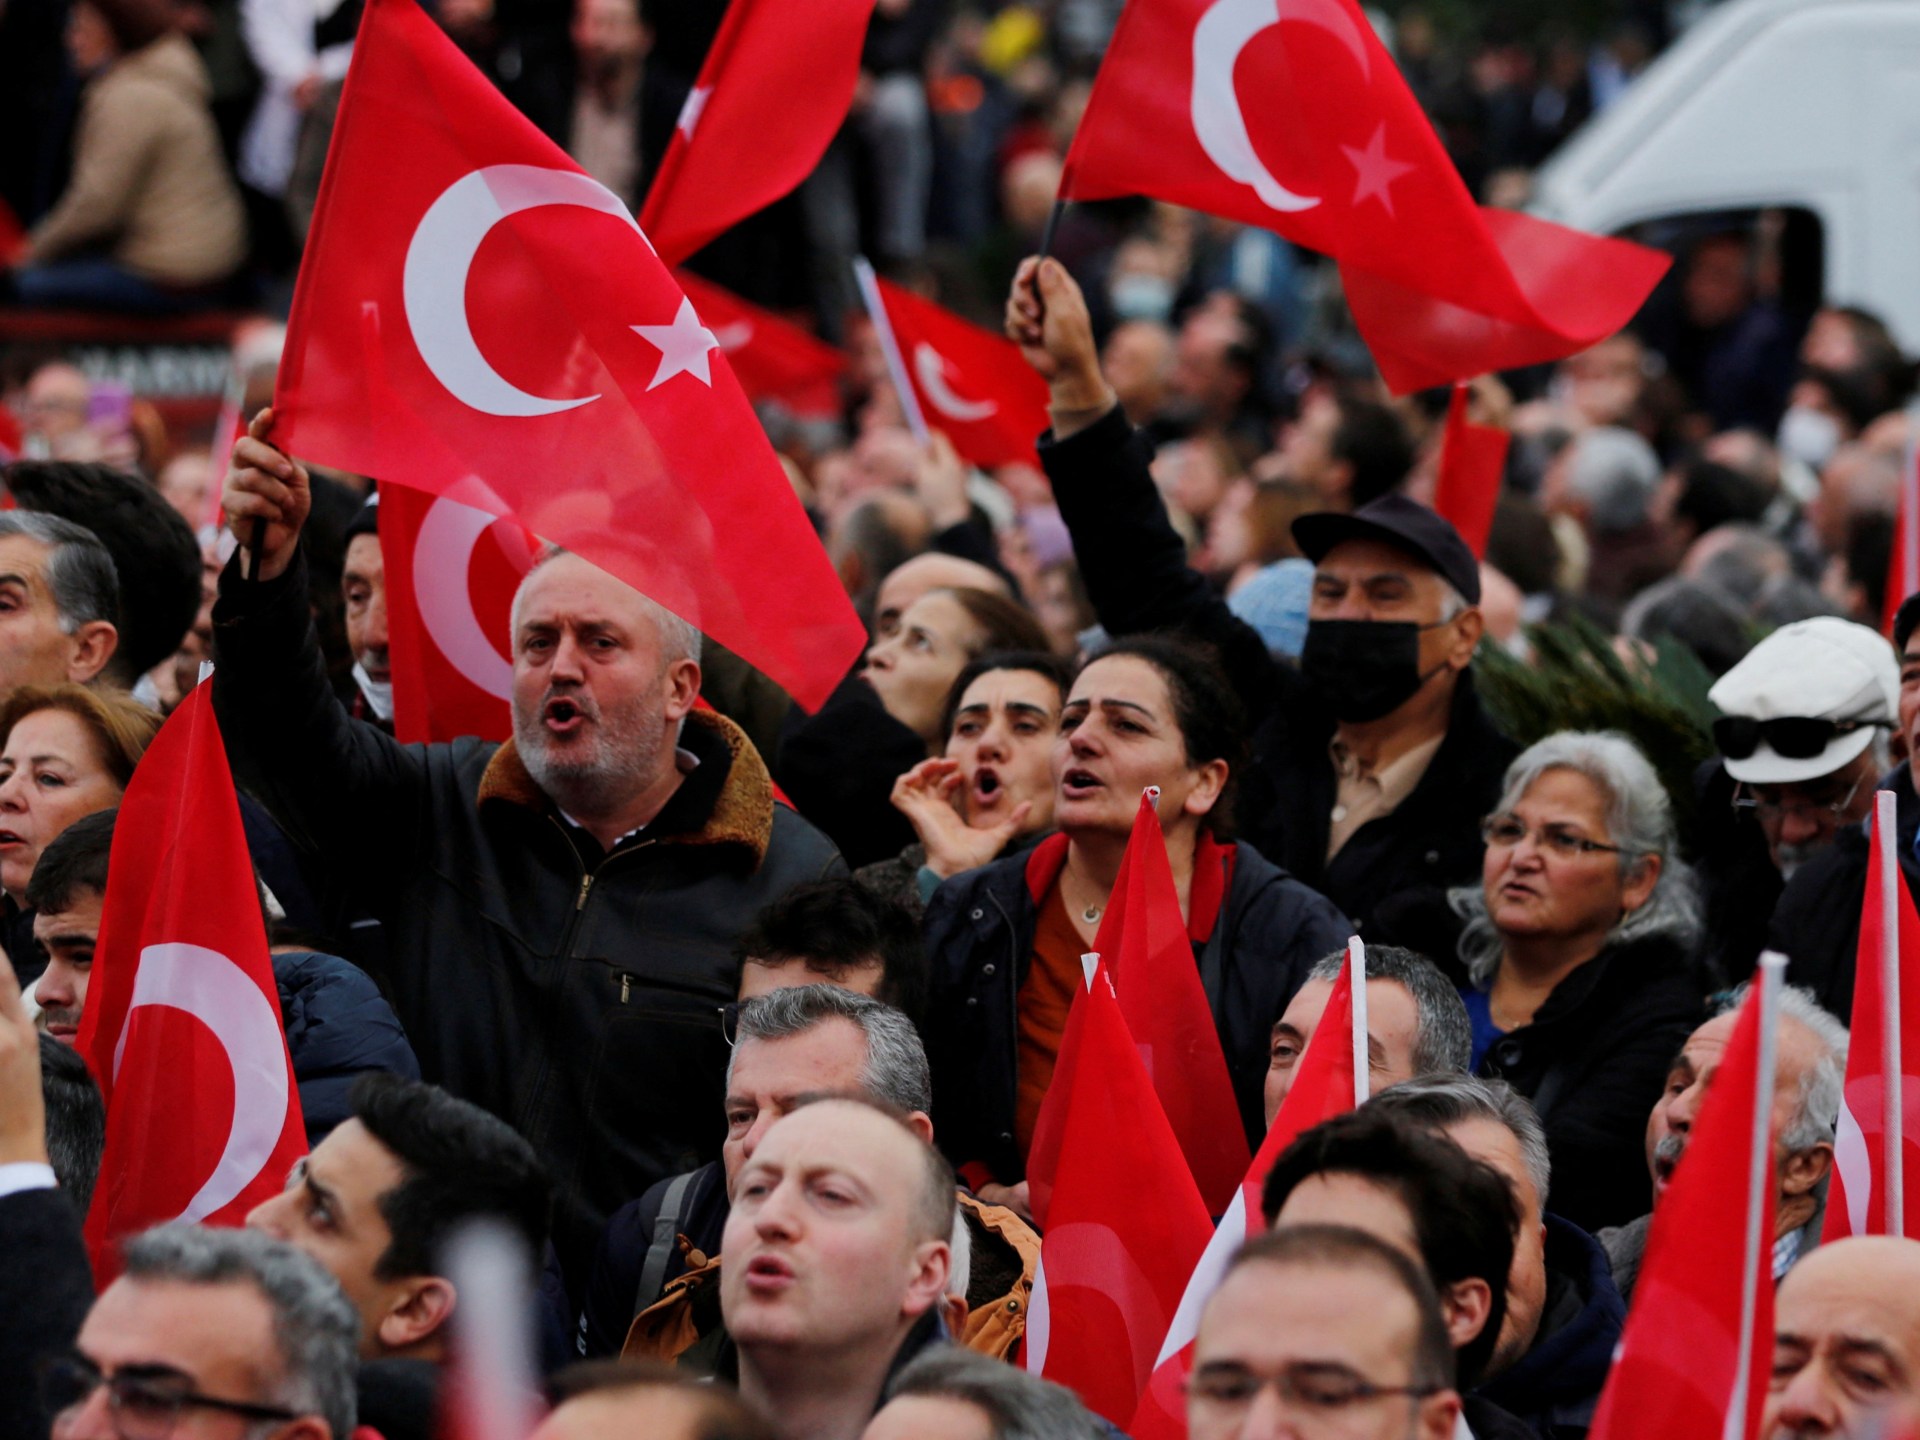 Turkey’s courts to repair any errors after Imamoglu jailing: Erdogan